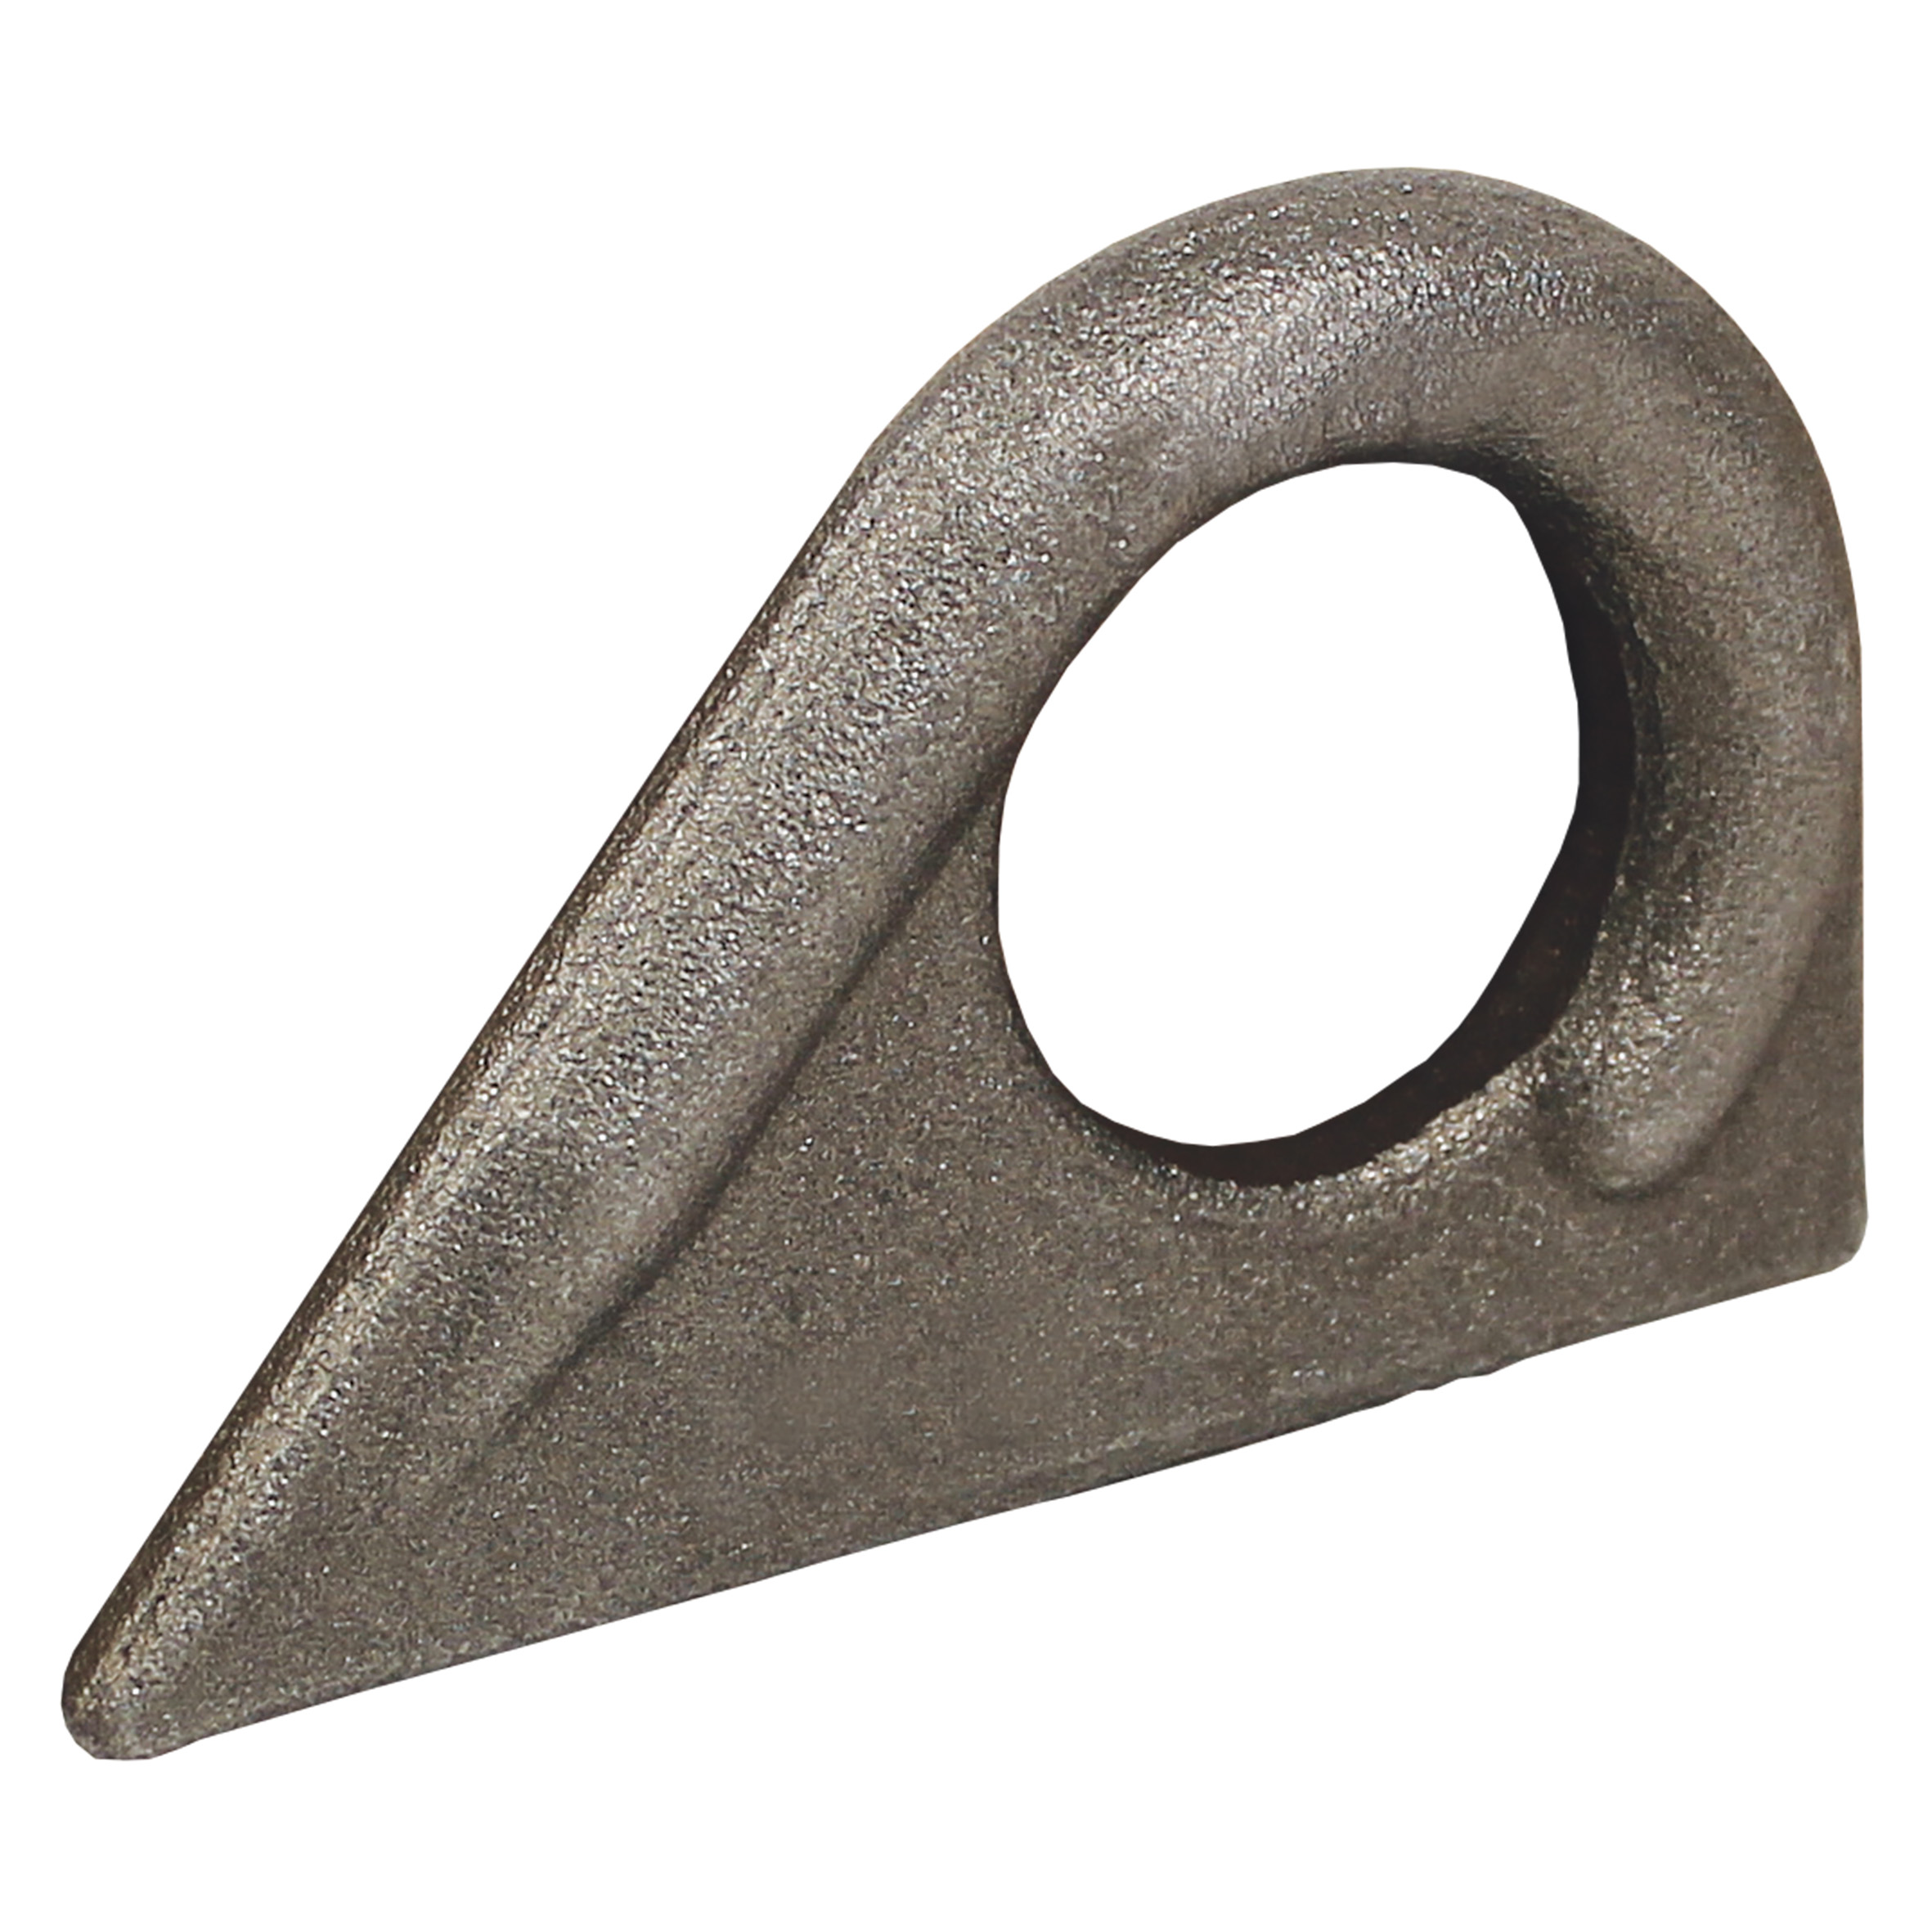 45° Hoist ring for welding - for 45° lifts - for welding - Steel - 